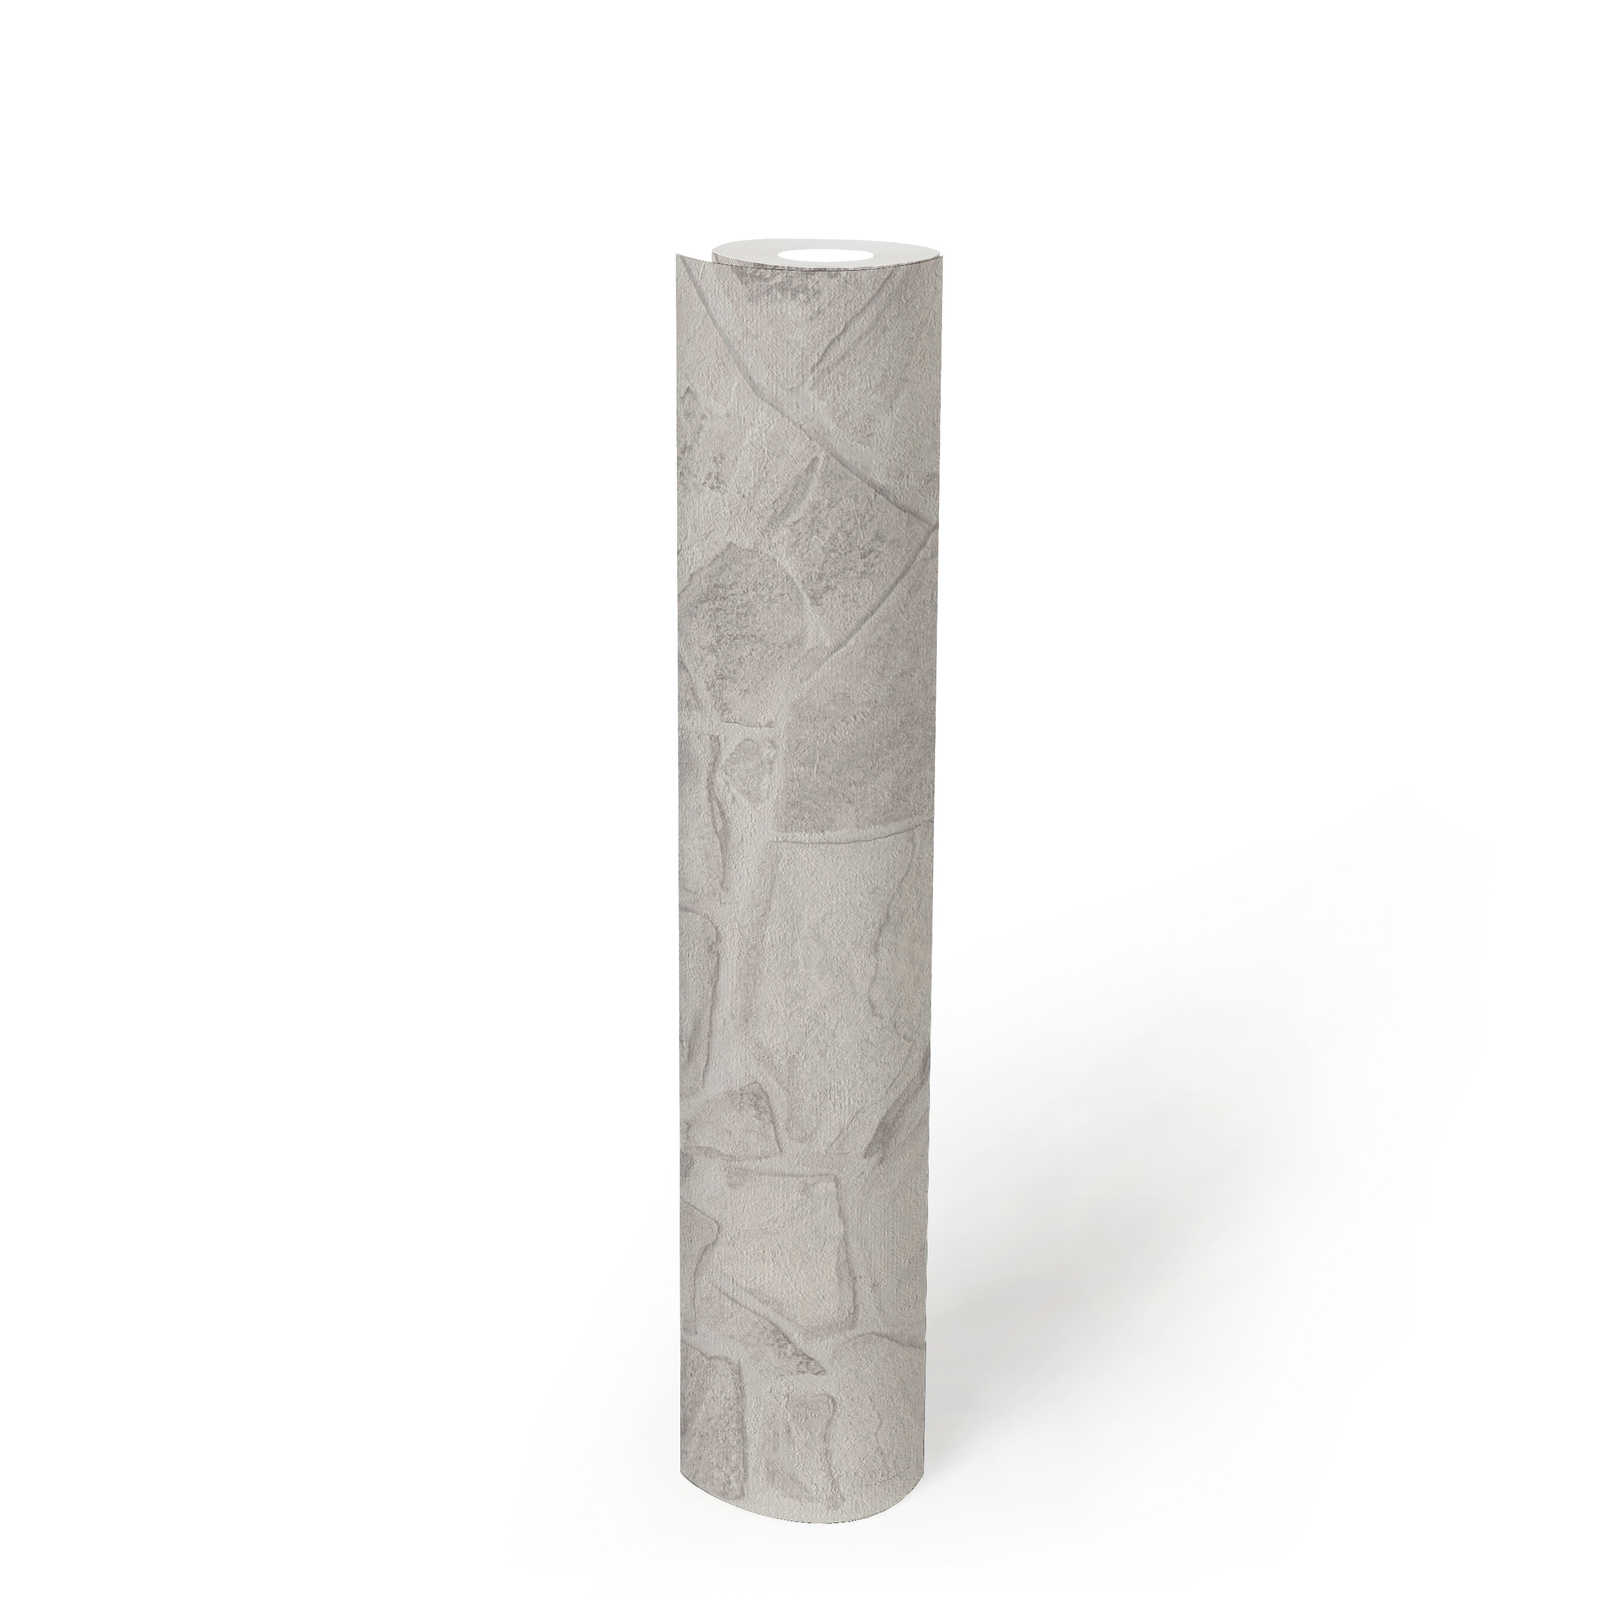             Carta da parati in tessuto non tessuto effetto pietra con effetto mattone 3D - grigio, bianco, grigio
        